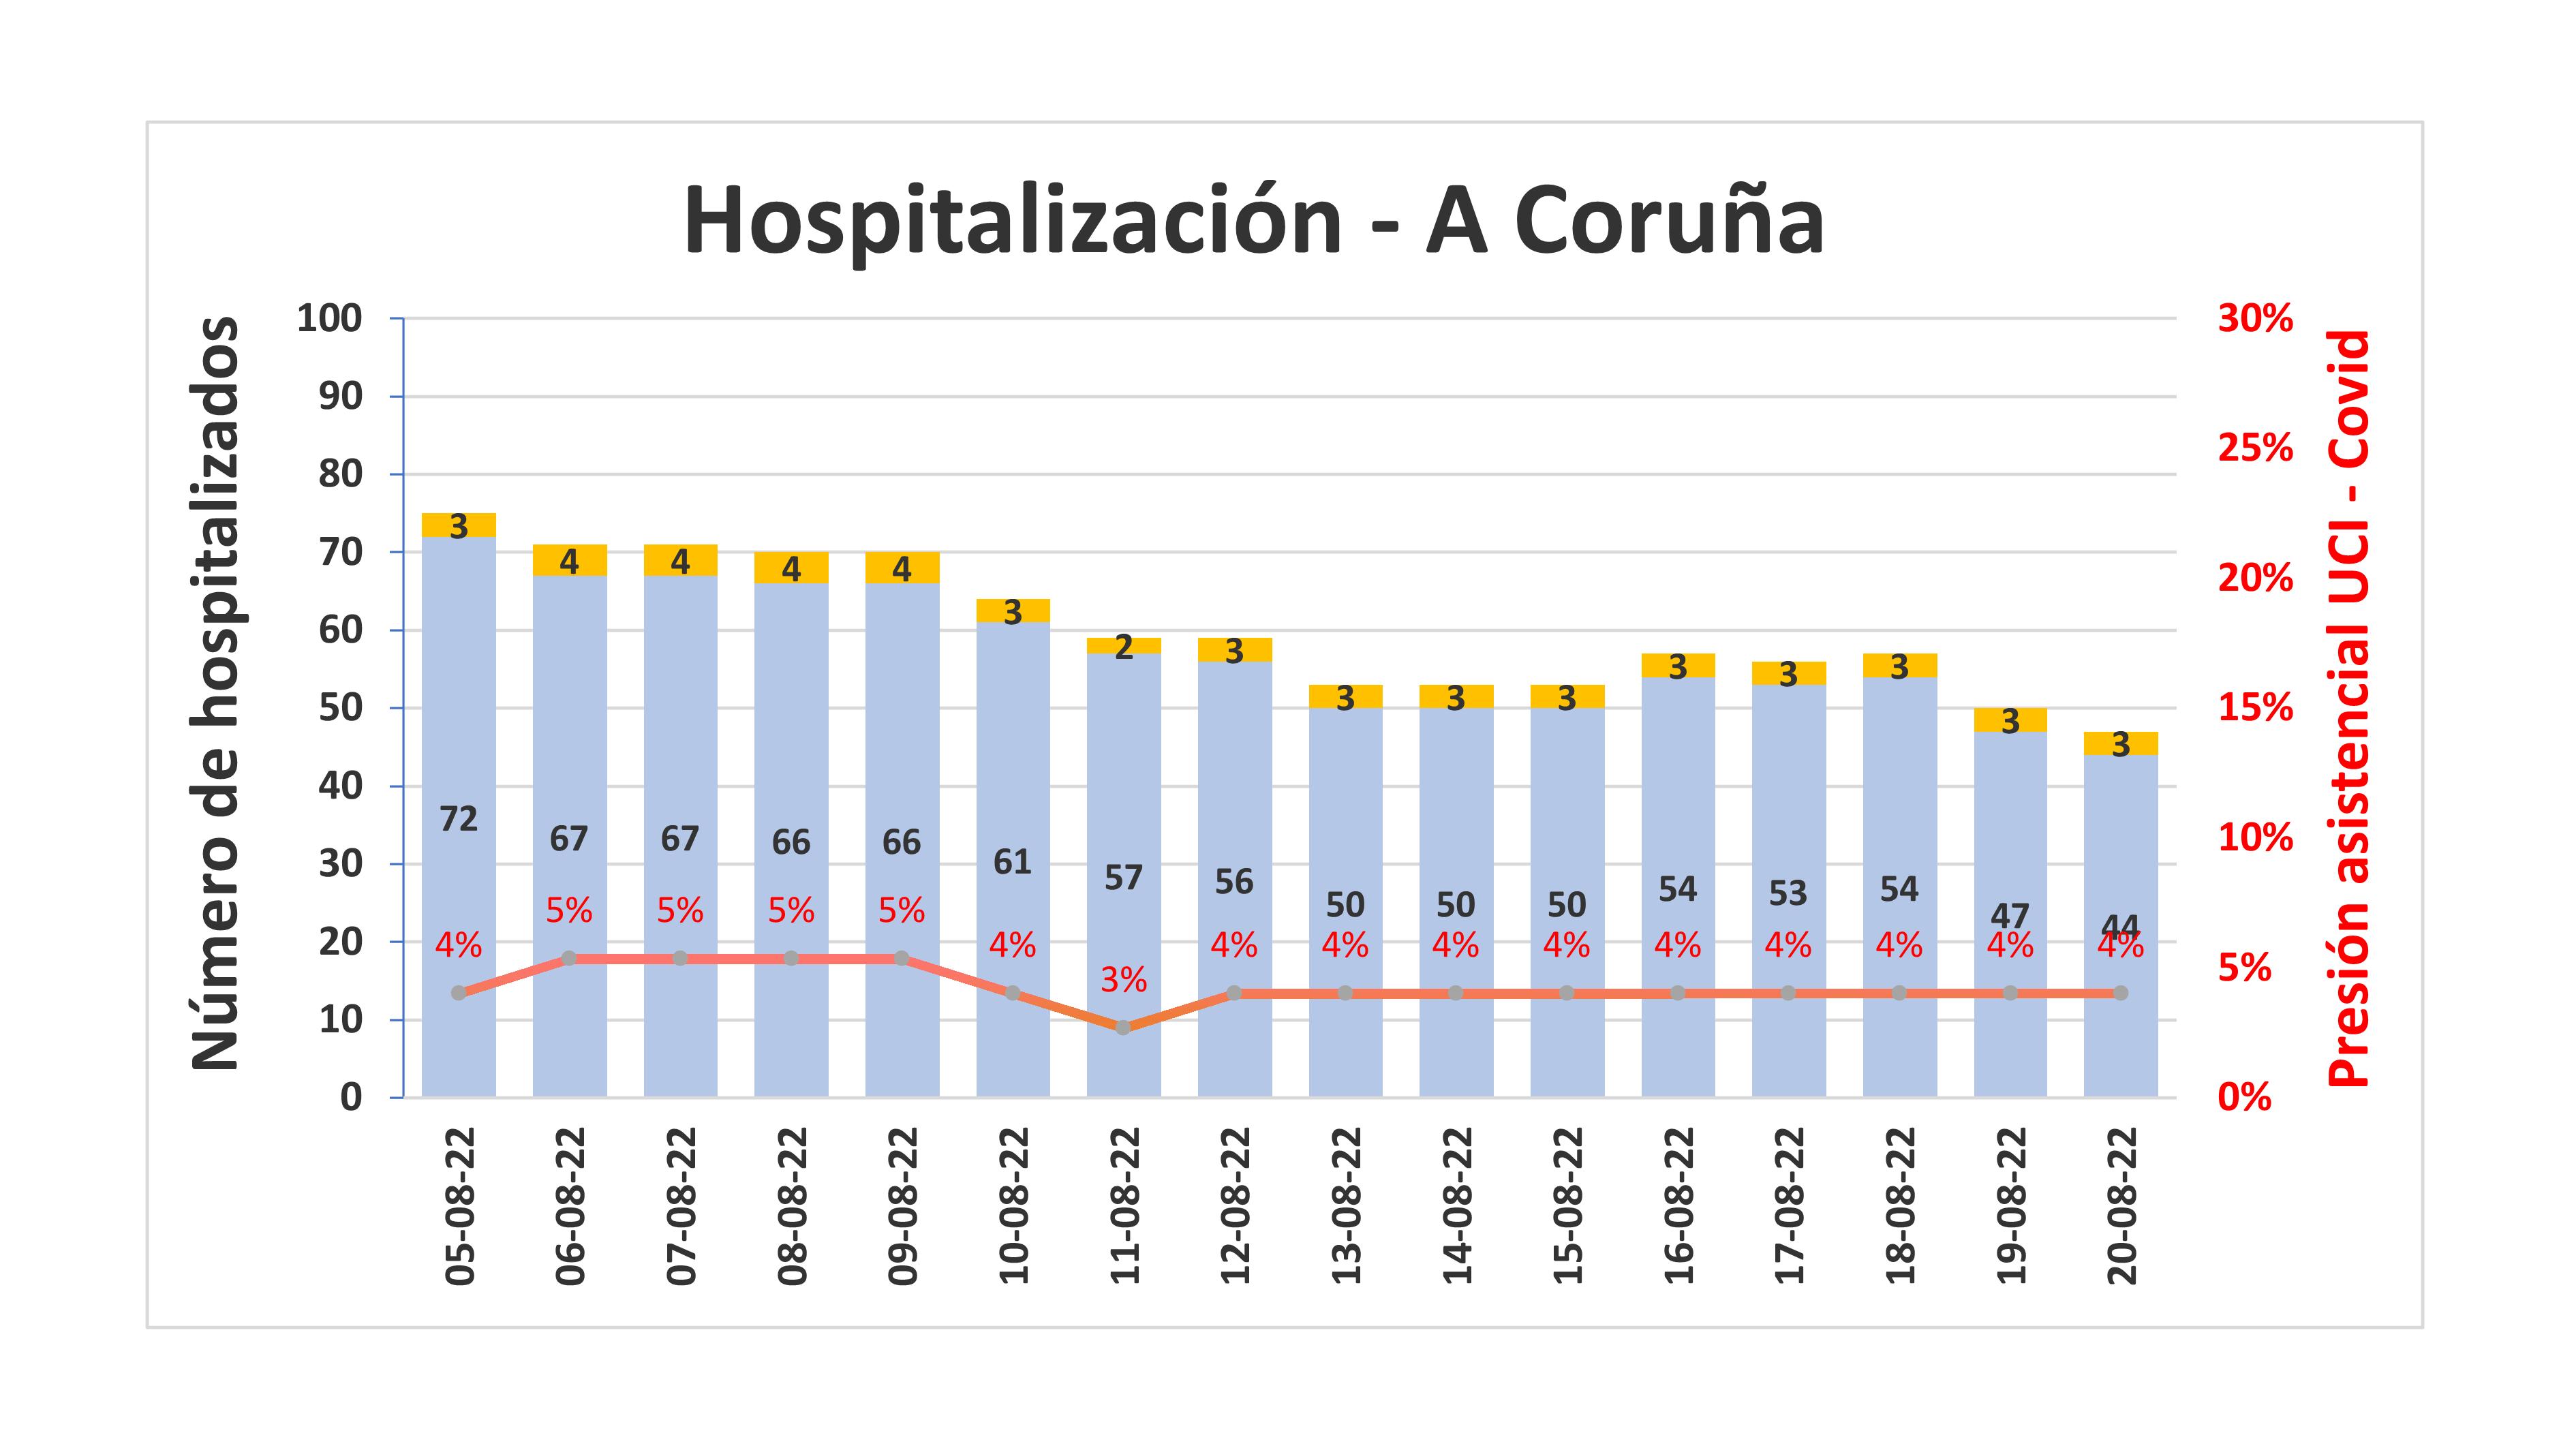 Hospitalización na área de A Coruña